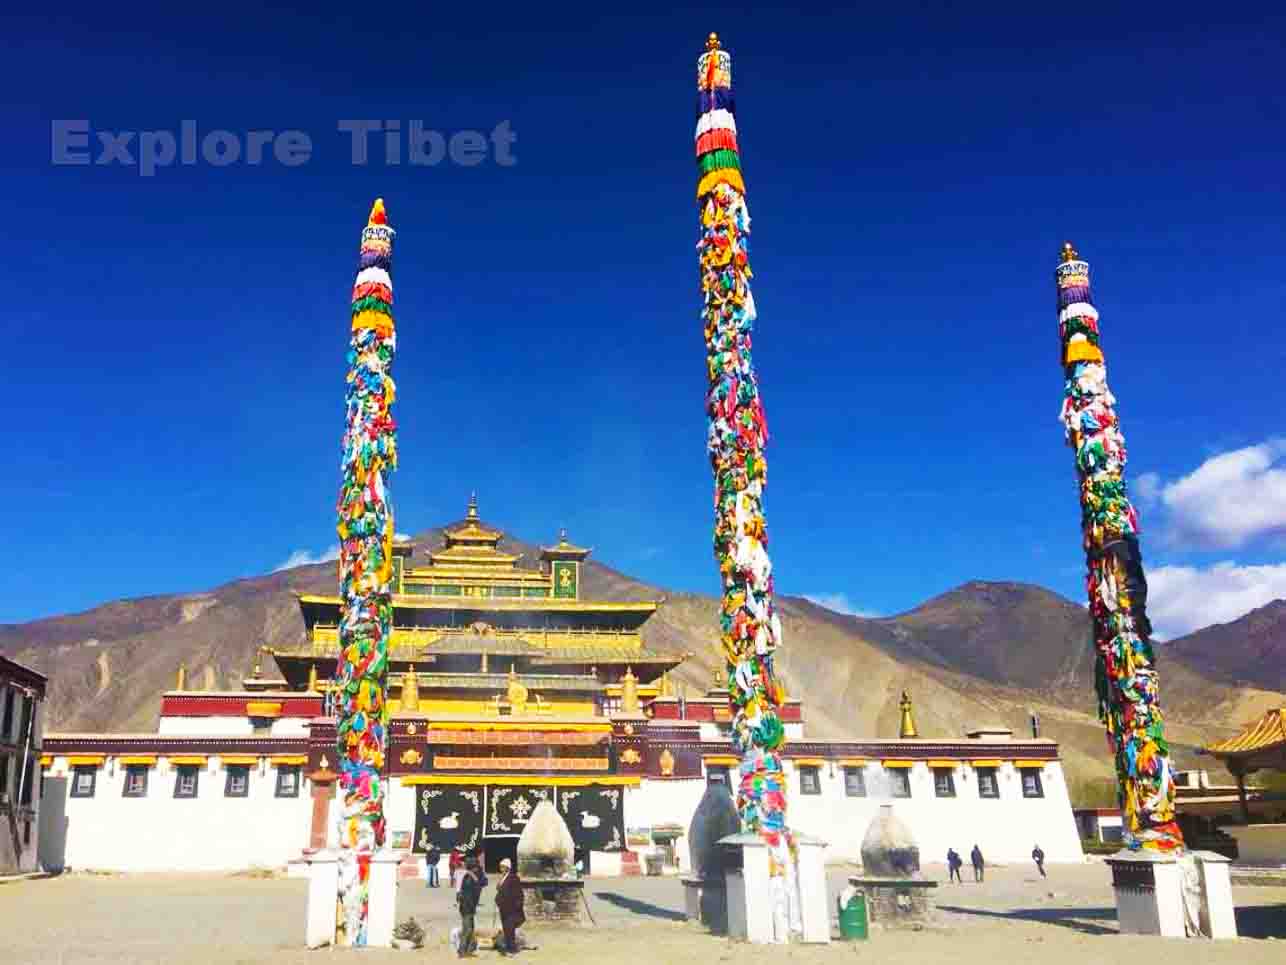 Samye Monastery -Explore Tibet